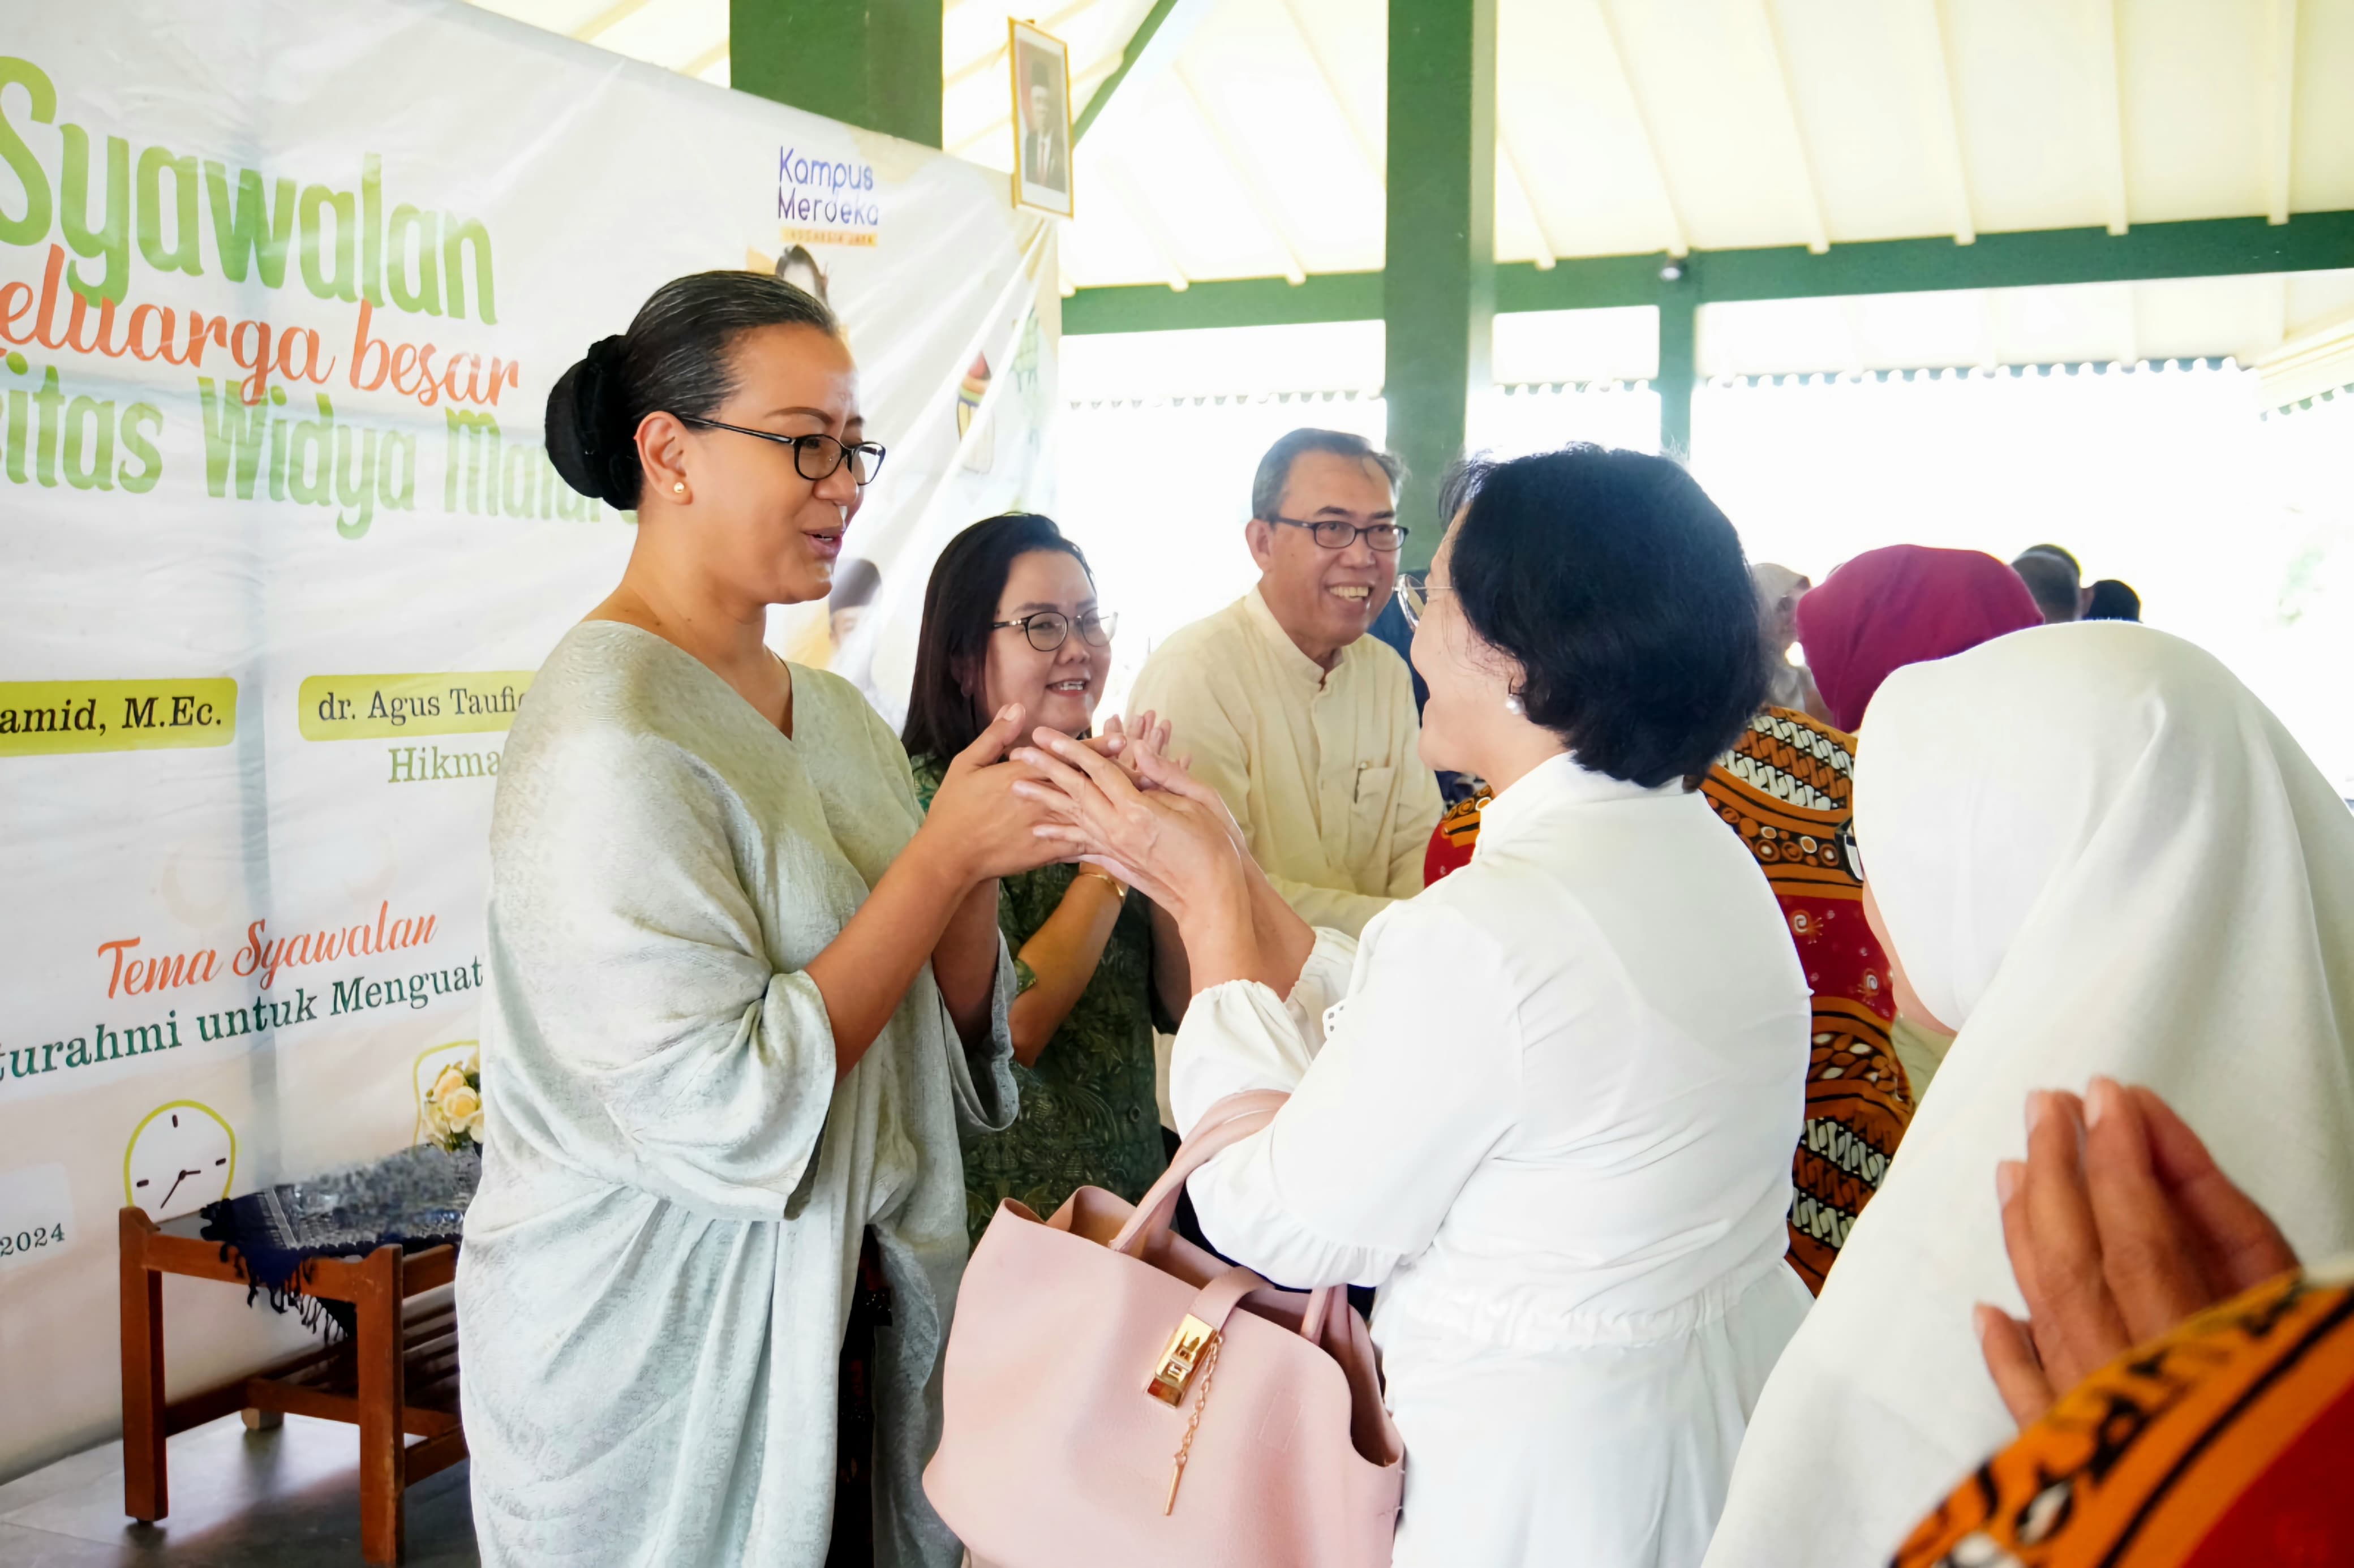 Syawalan Universitas Widya Mataram: Merayakan Kebahagiaan dan Kebersamaan